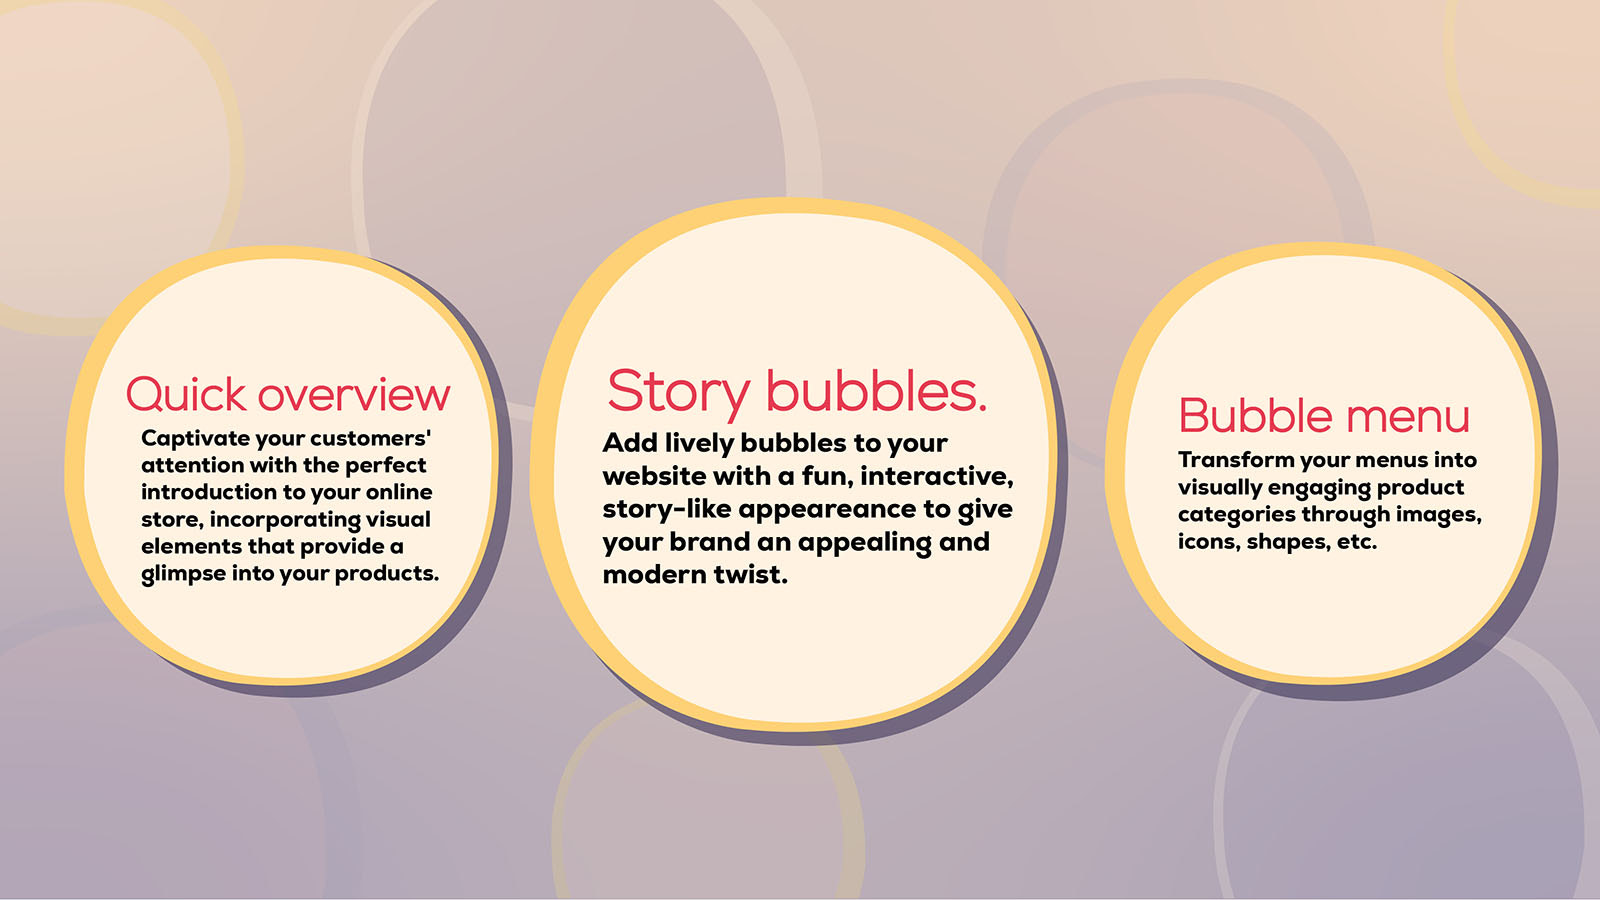 Características del Menú de Burbujas de Historia